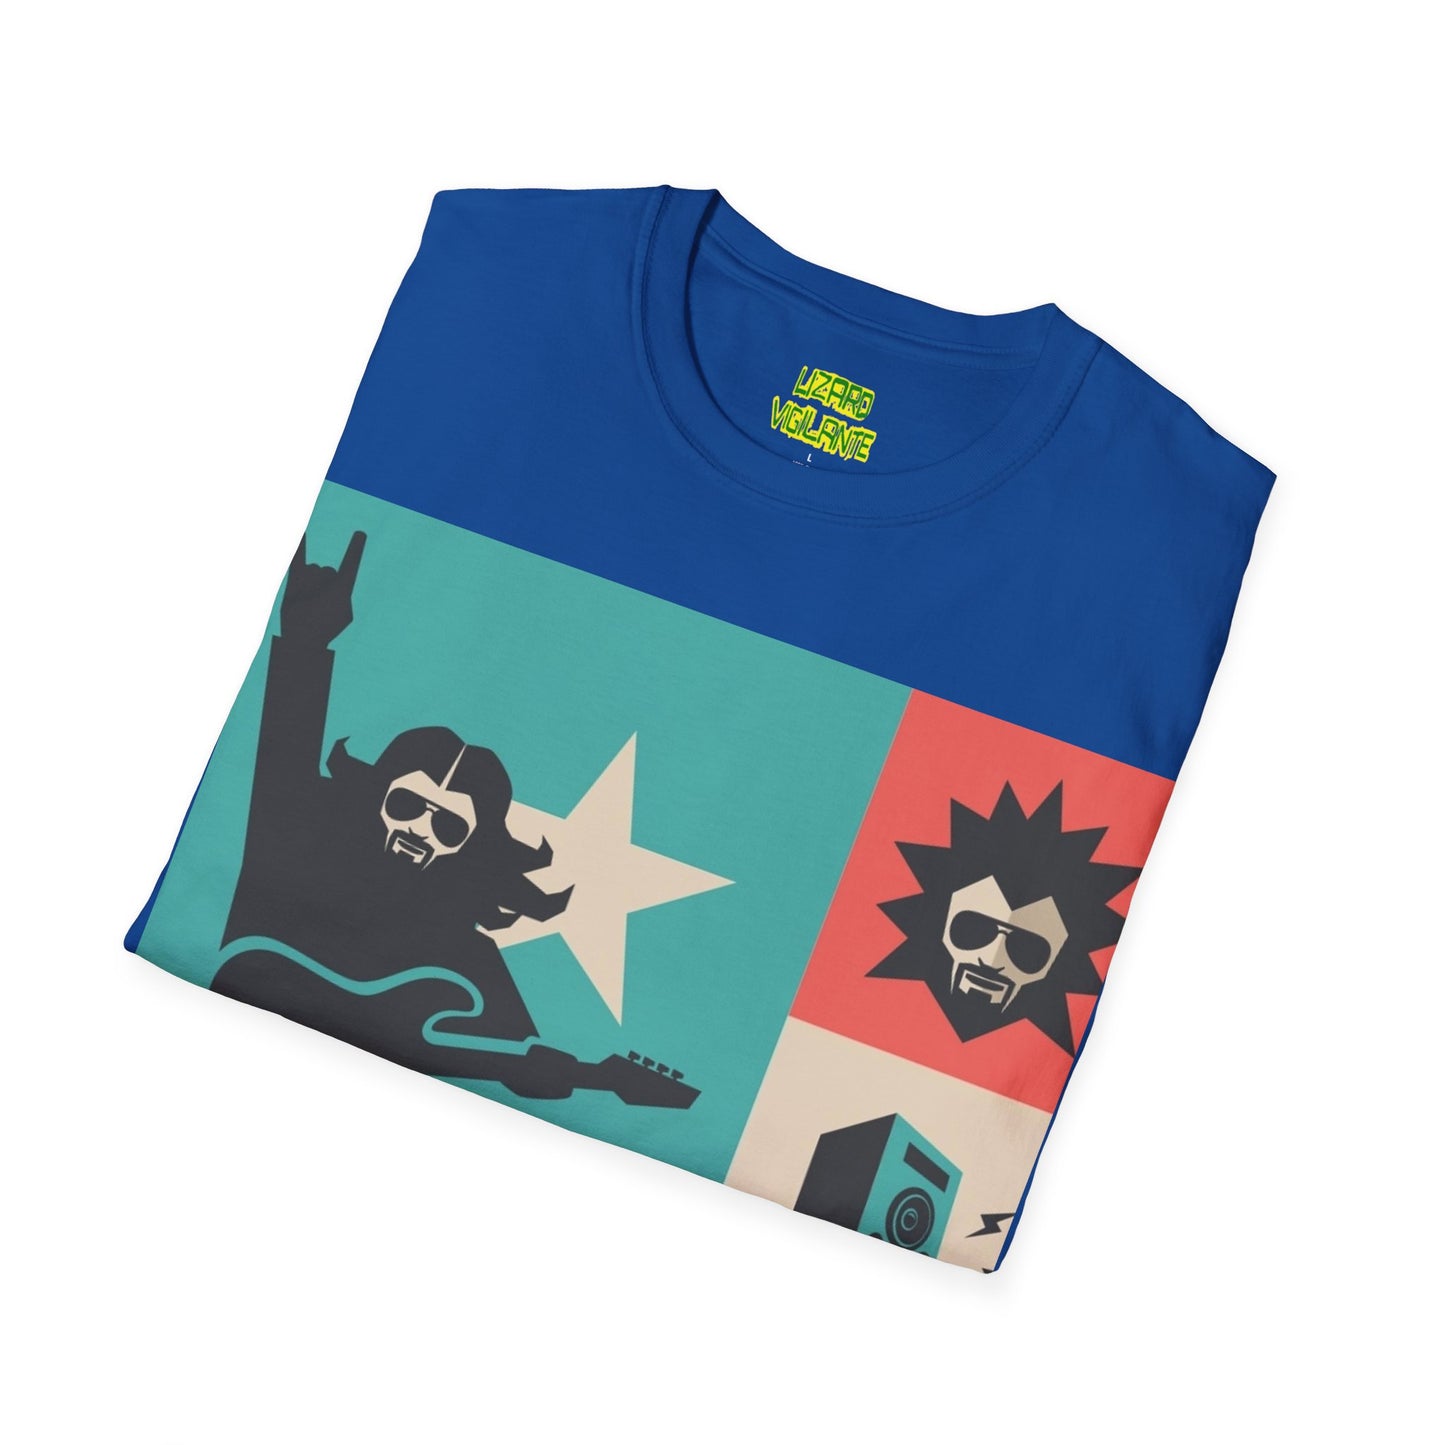 Rock Dudes Unisex Softstyle T-Shirt - Lizard Vigilante